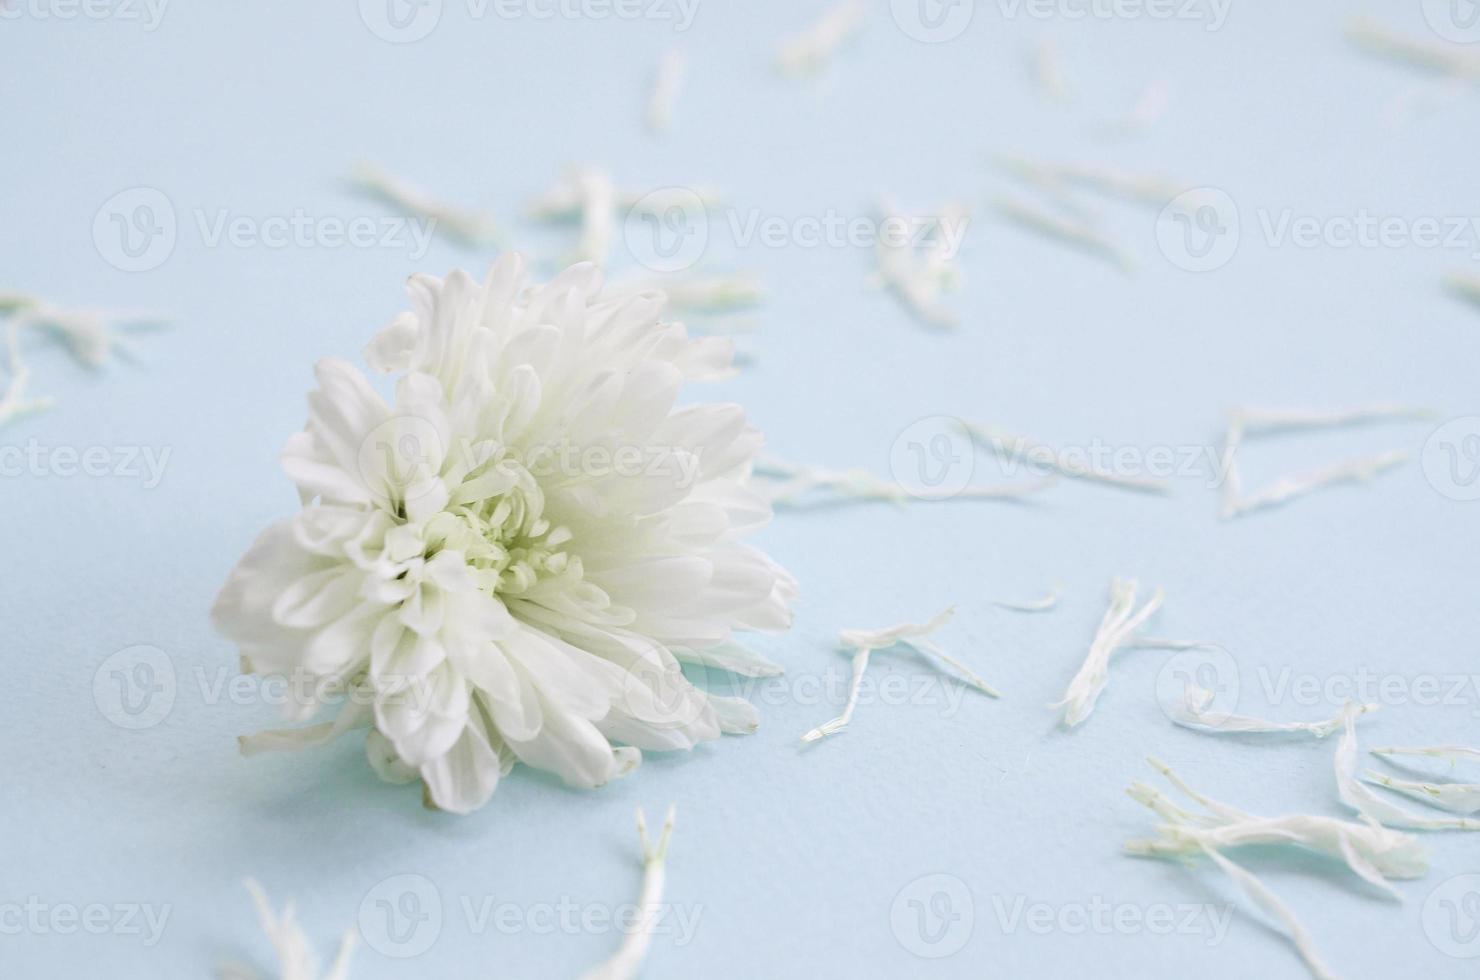 cabeza de flor de crisantemo blanco y muchos pétalos en azul pastel con fondo borroso foto